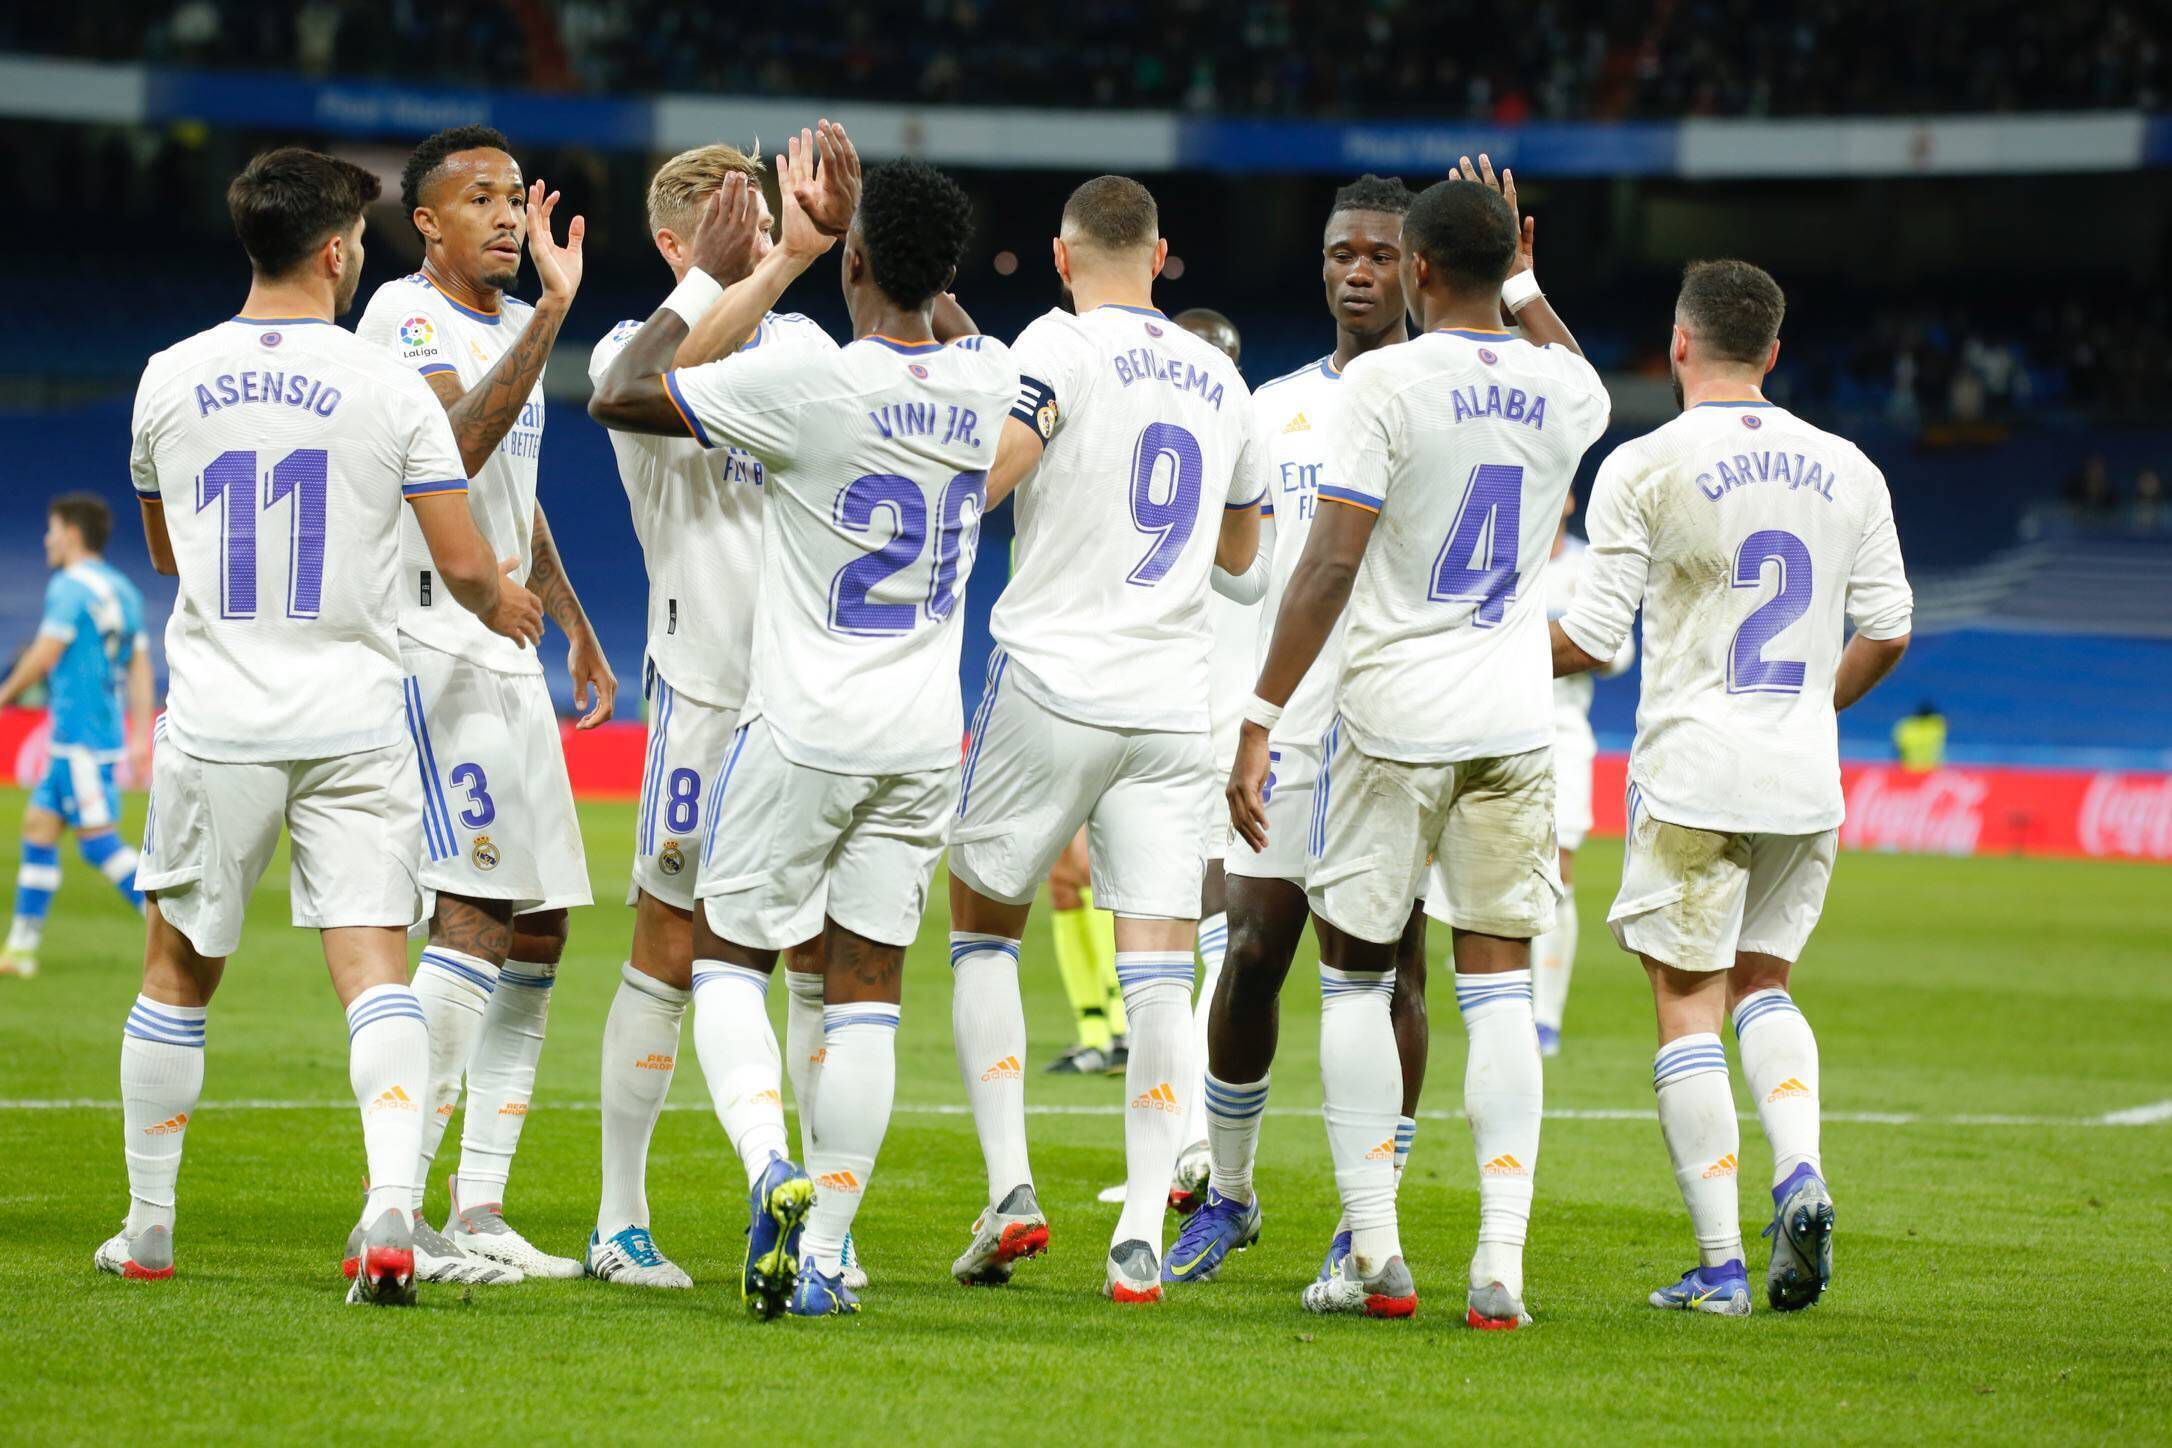 Шампионска лига се завръща с мега сблъсък – Пари Сен Жермен – Реал Мадрид